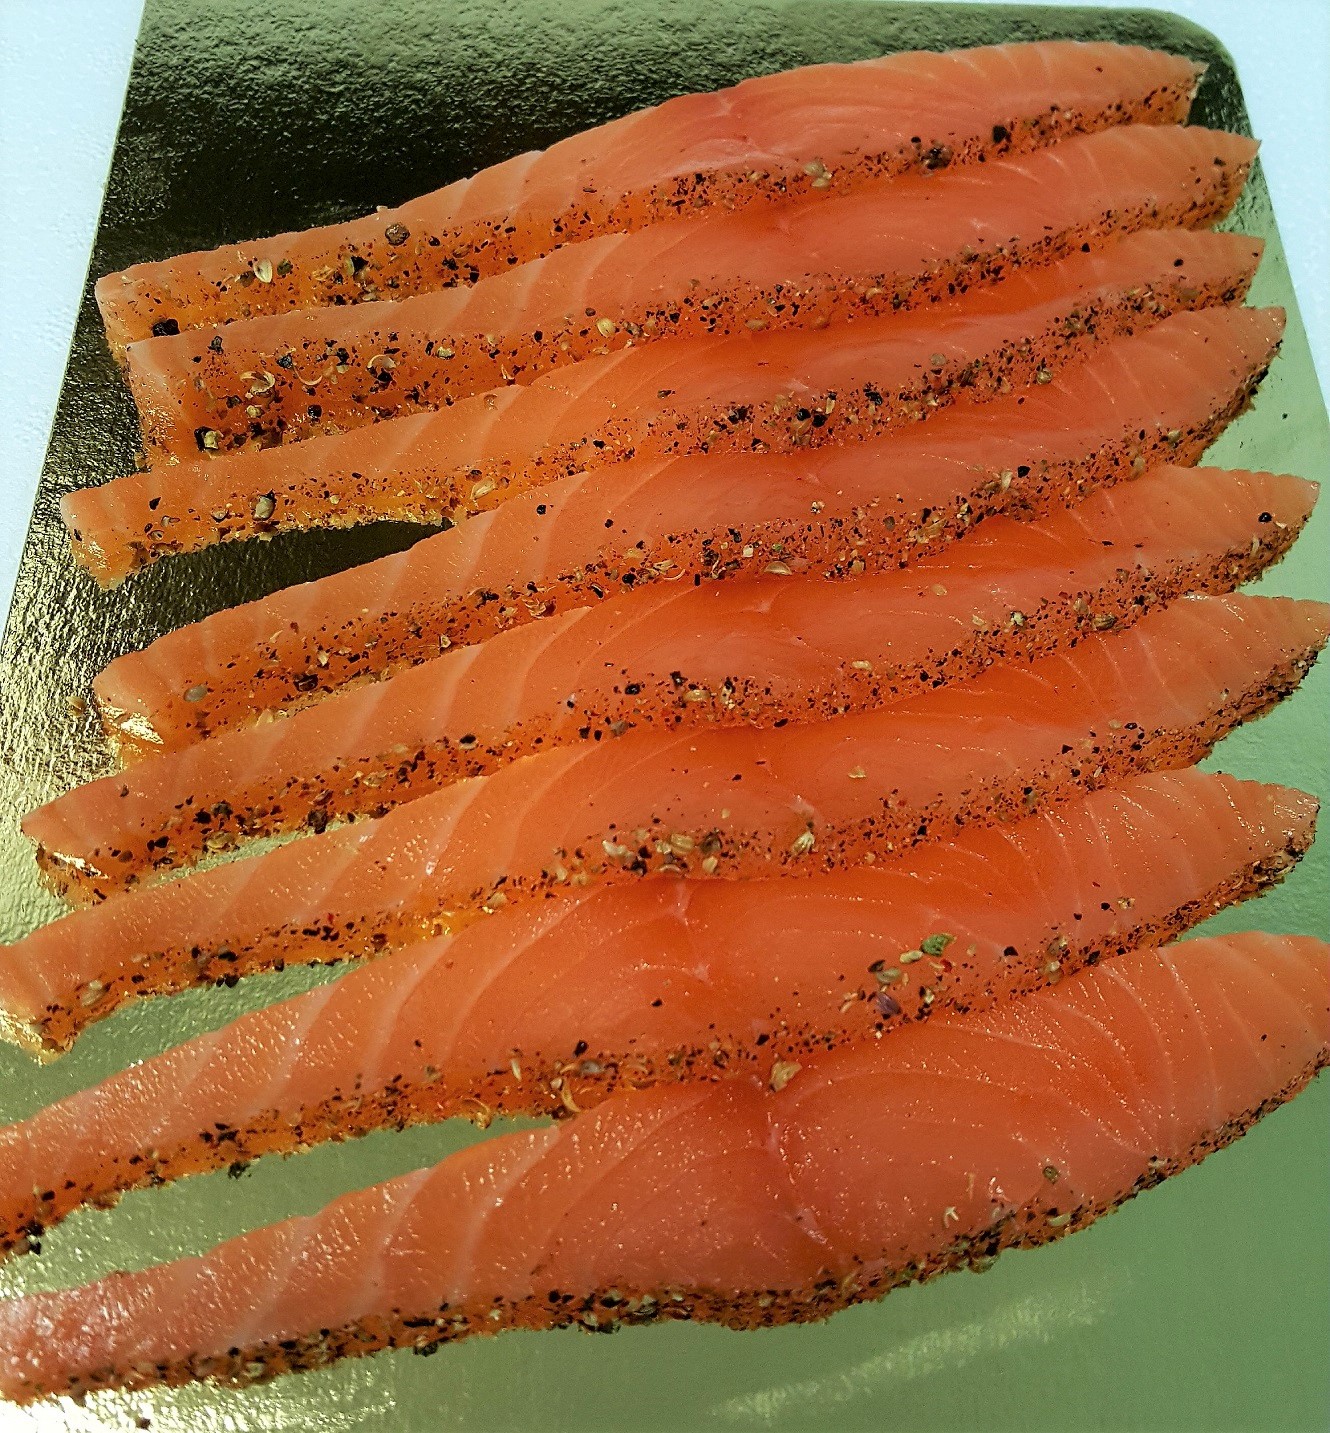 émincés de saumon gravlax